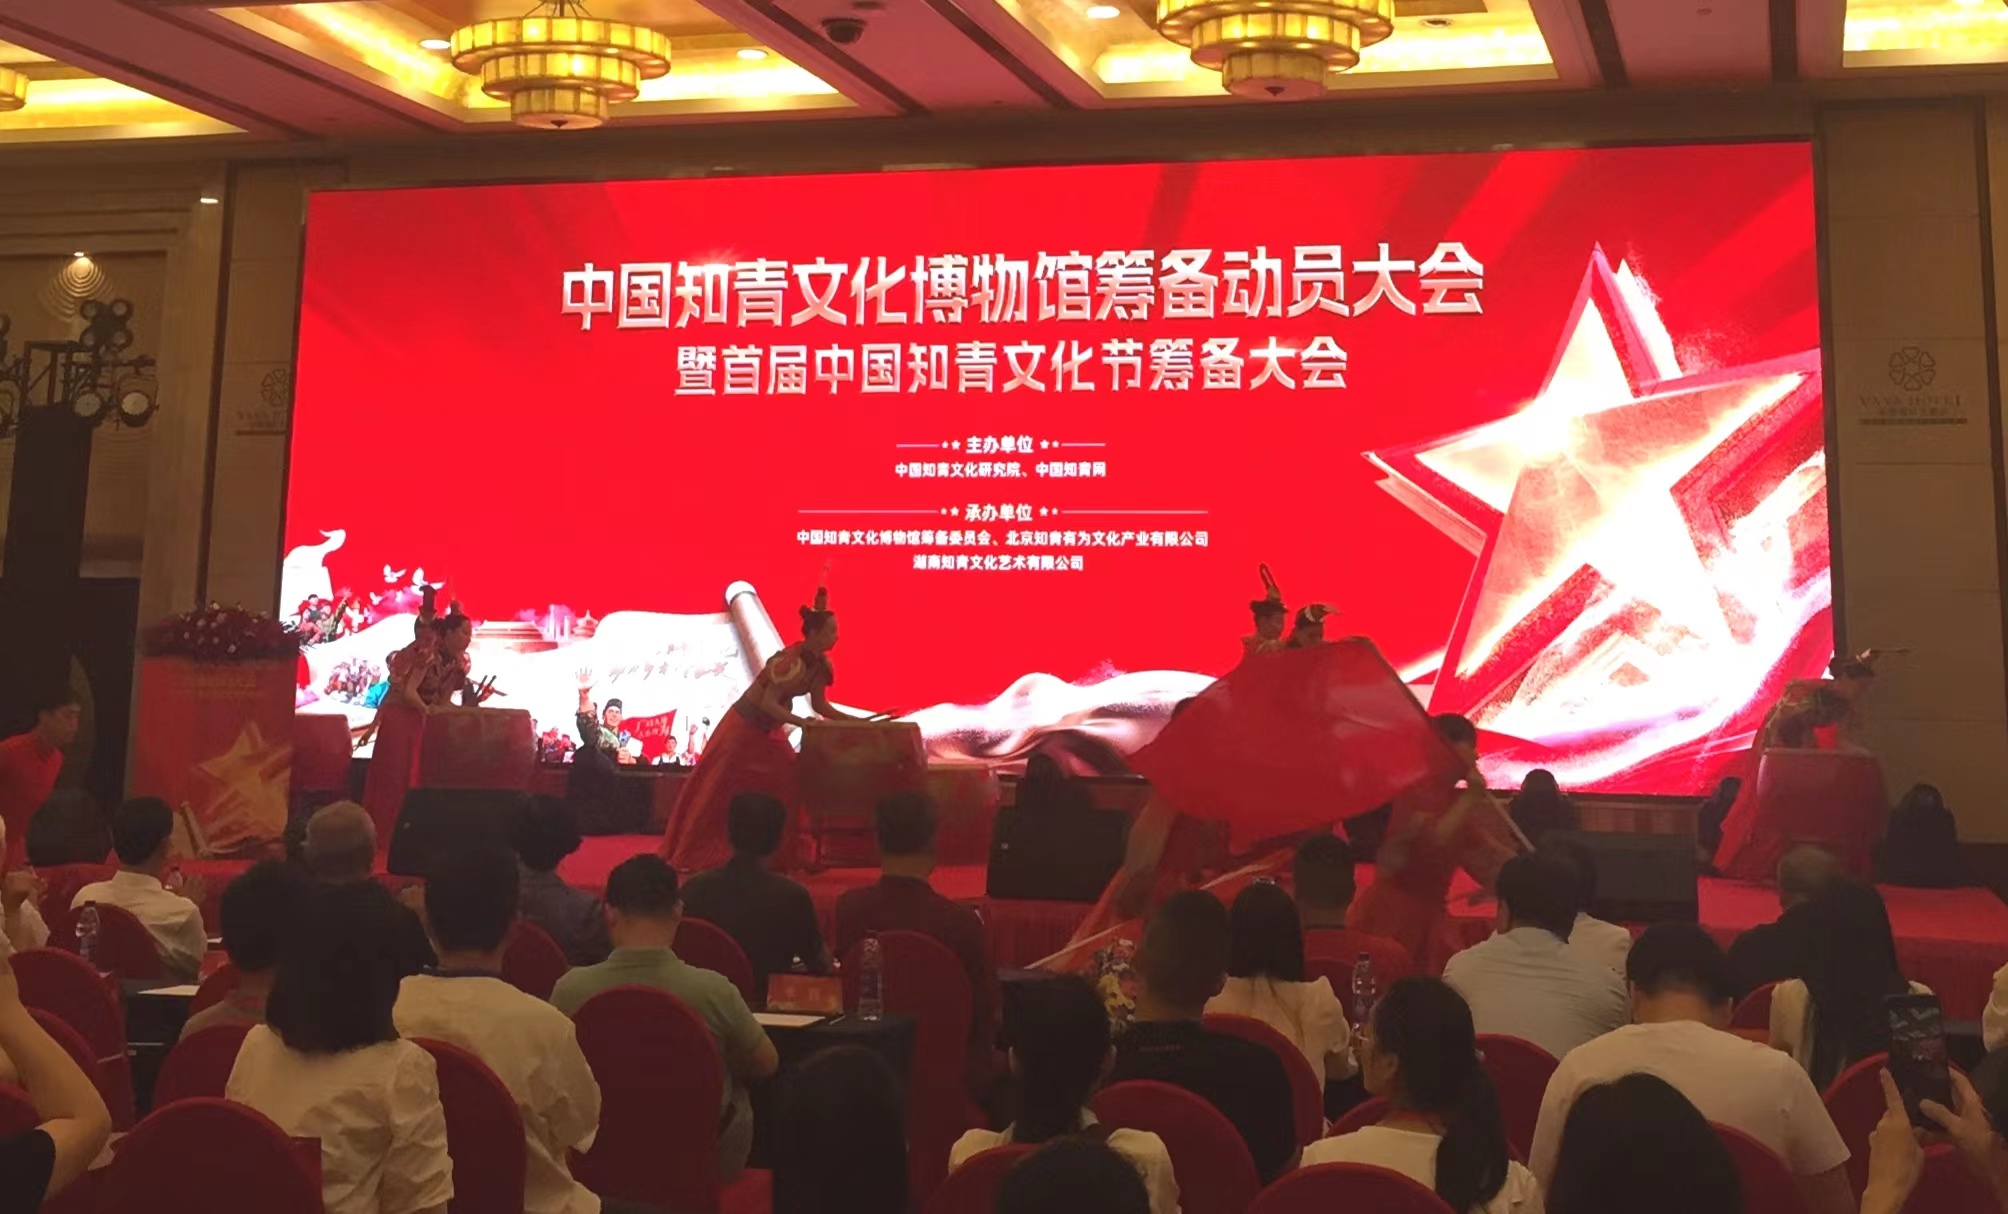 首屆中國知青文化節將於9月在長沙舉行